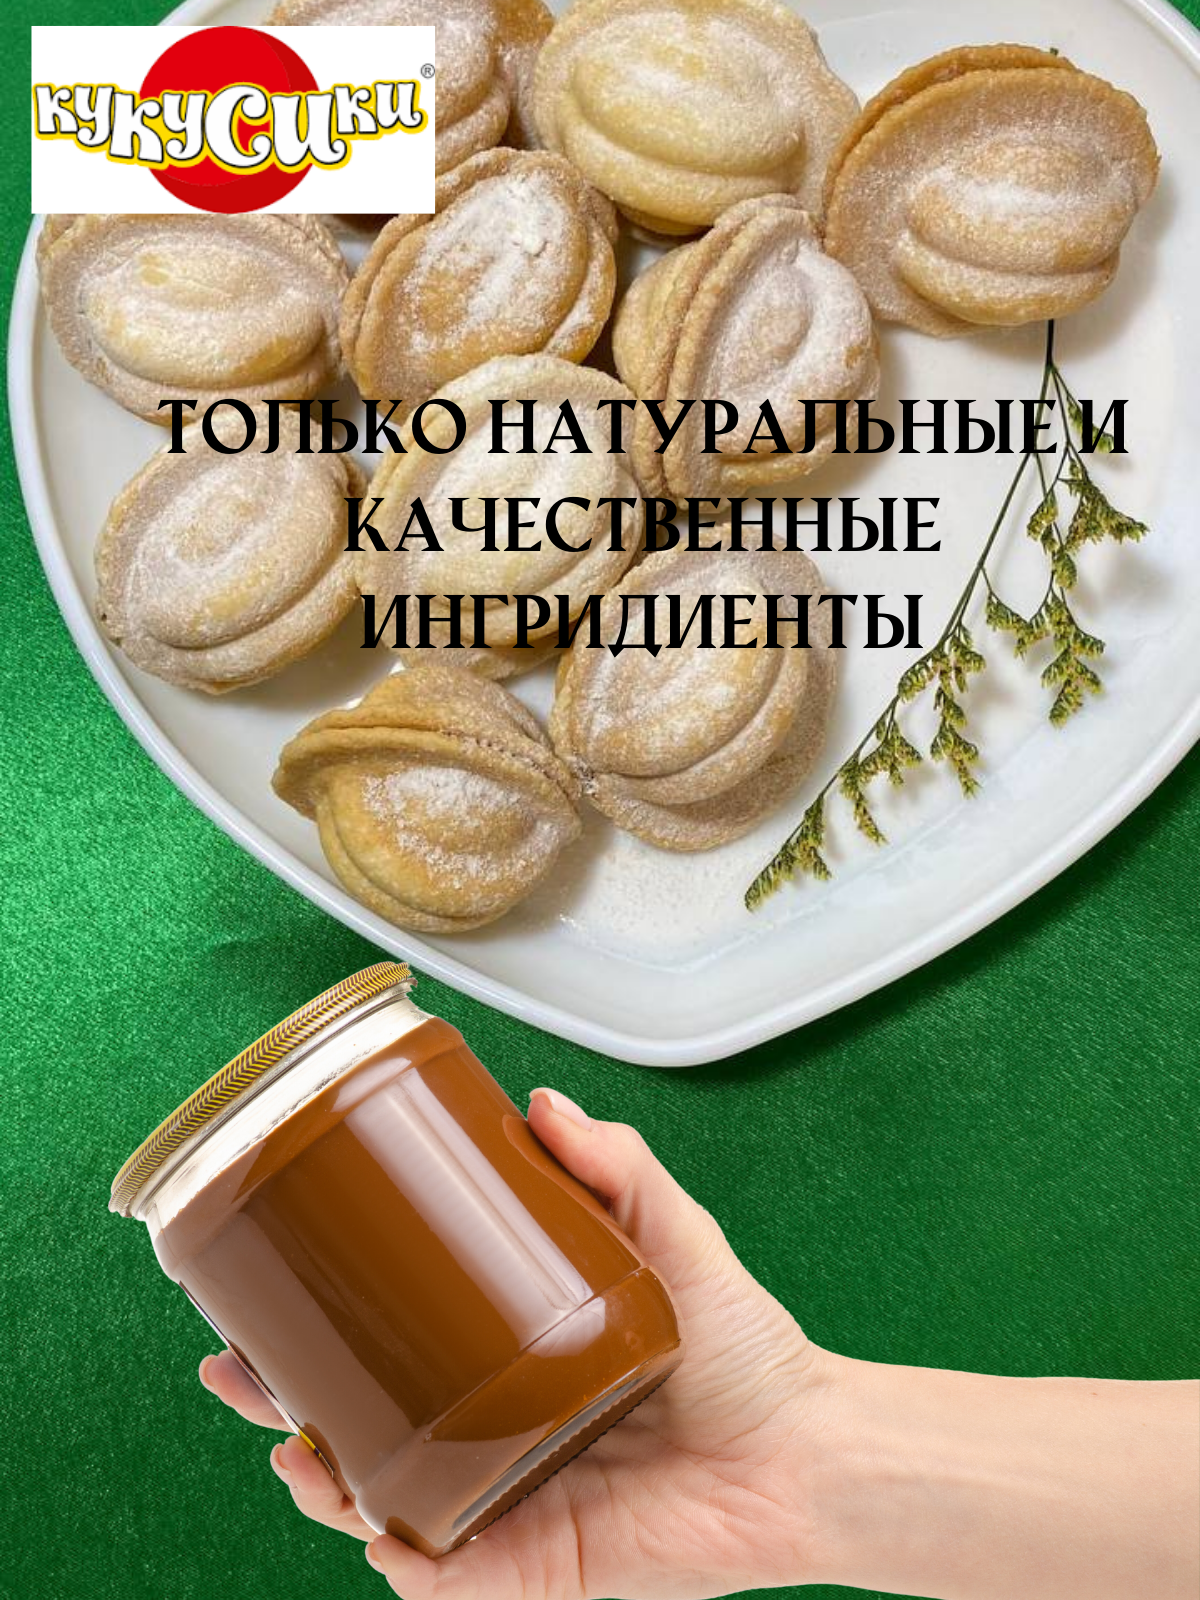 Печенье Орешки со сгущенкой и грецким орехом 2 уп по 1,3 кг - фотография № 2